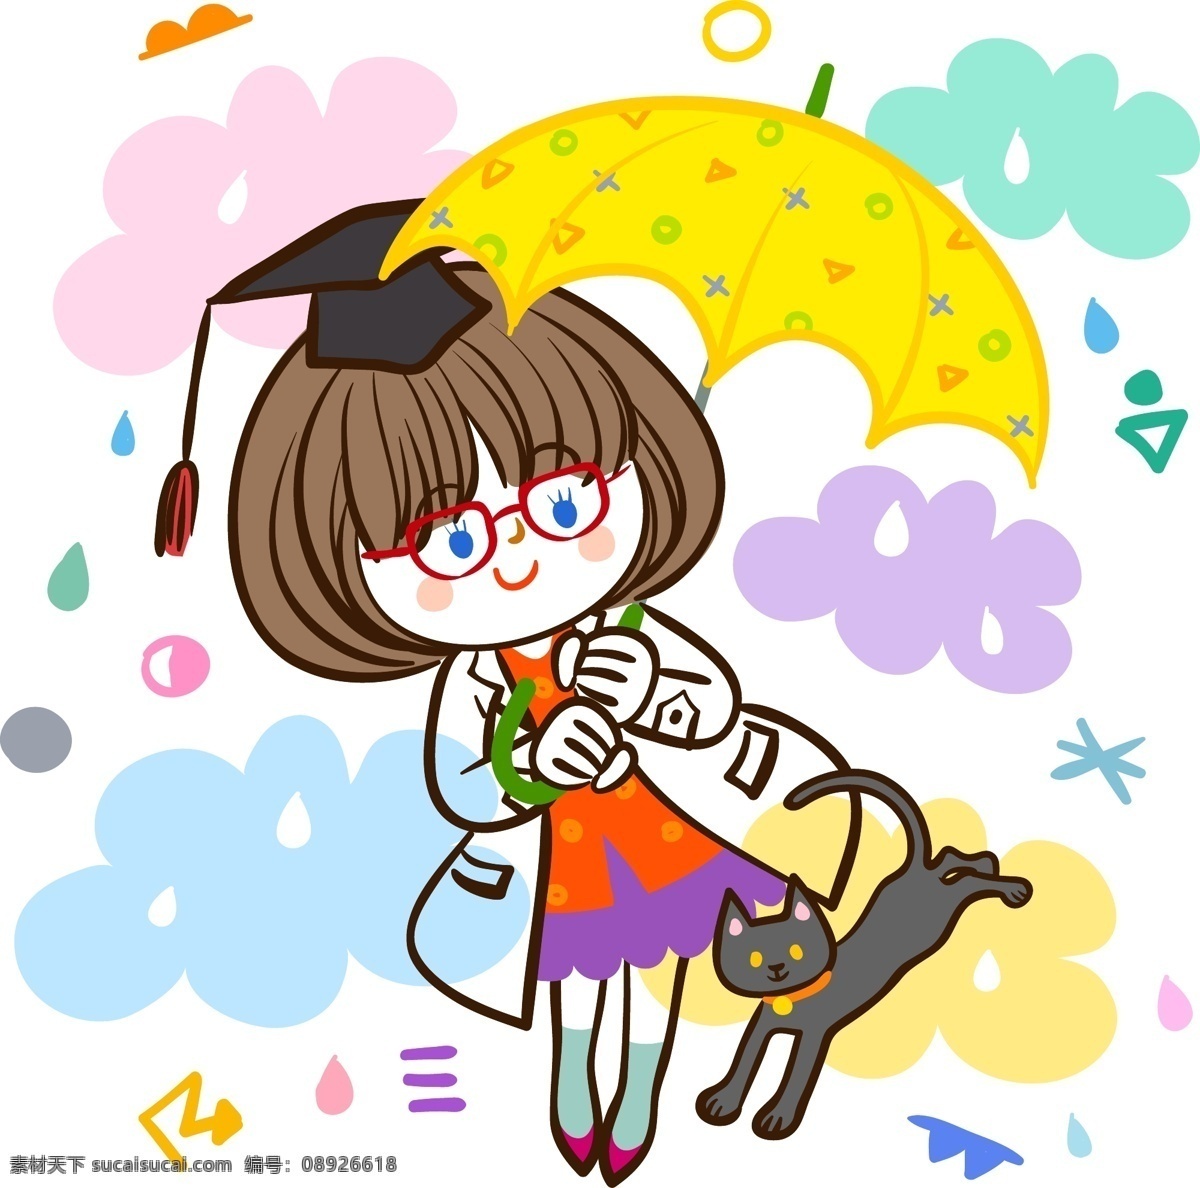 雨伞 女孩 卡通 漫画 漫画素材 矢量素材 矢量 打雨伞 矢量图 其他矢量图